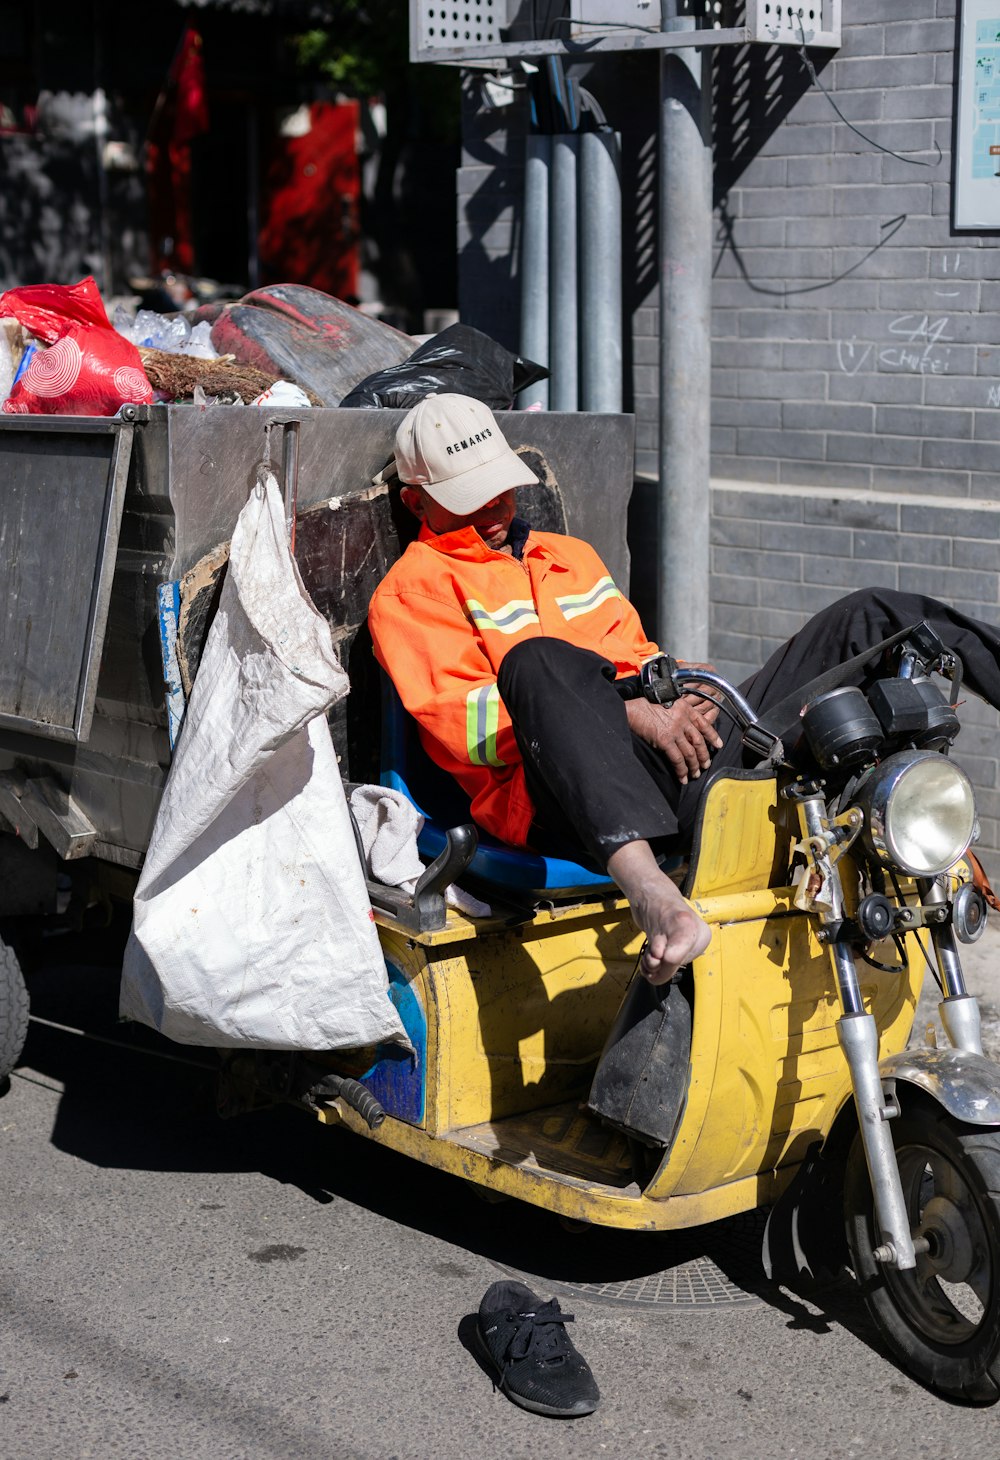 Uomo in giacca arancione e bianca che si siede sulla motocicletta gialla durante il giorno